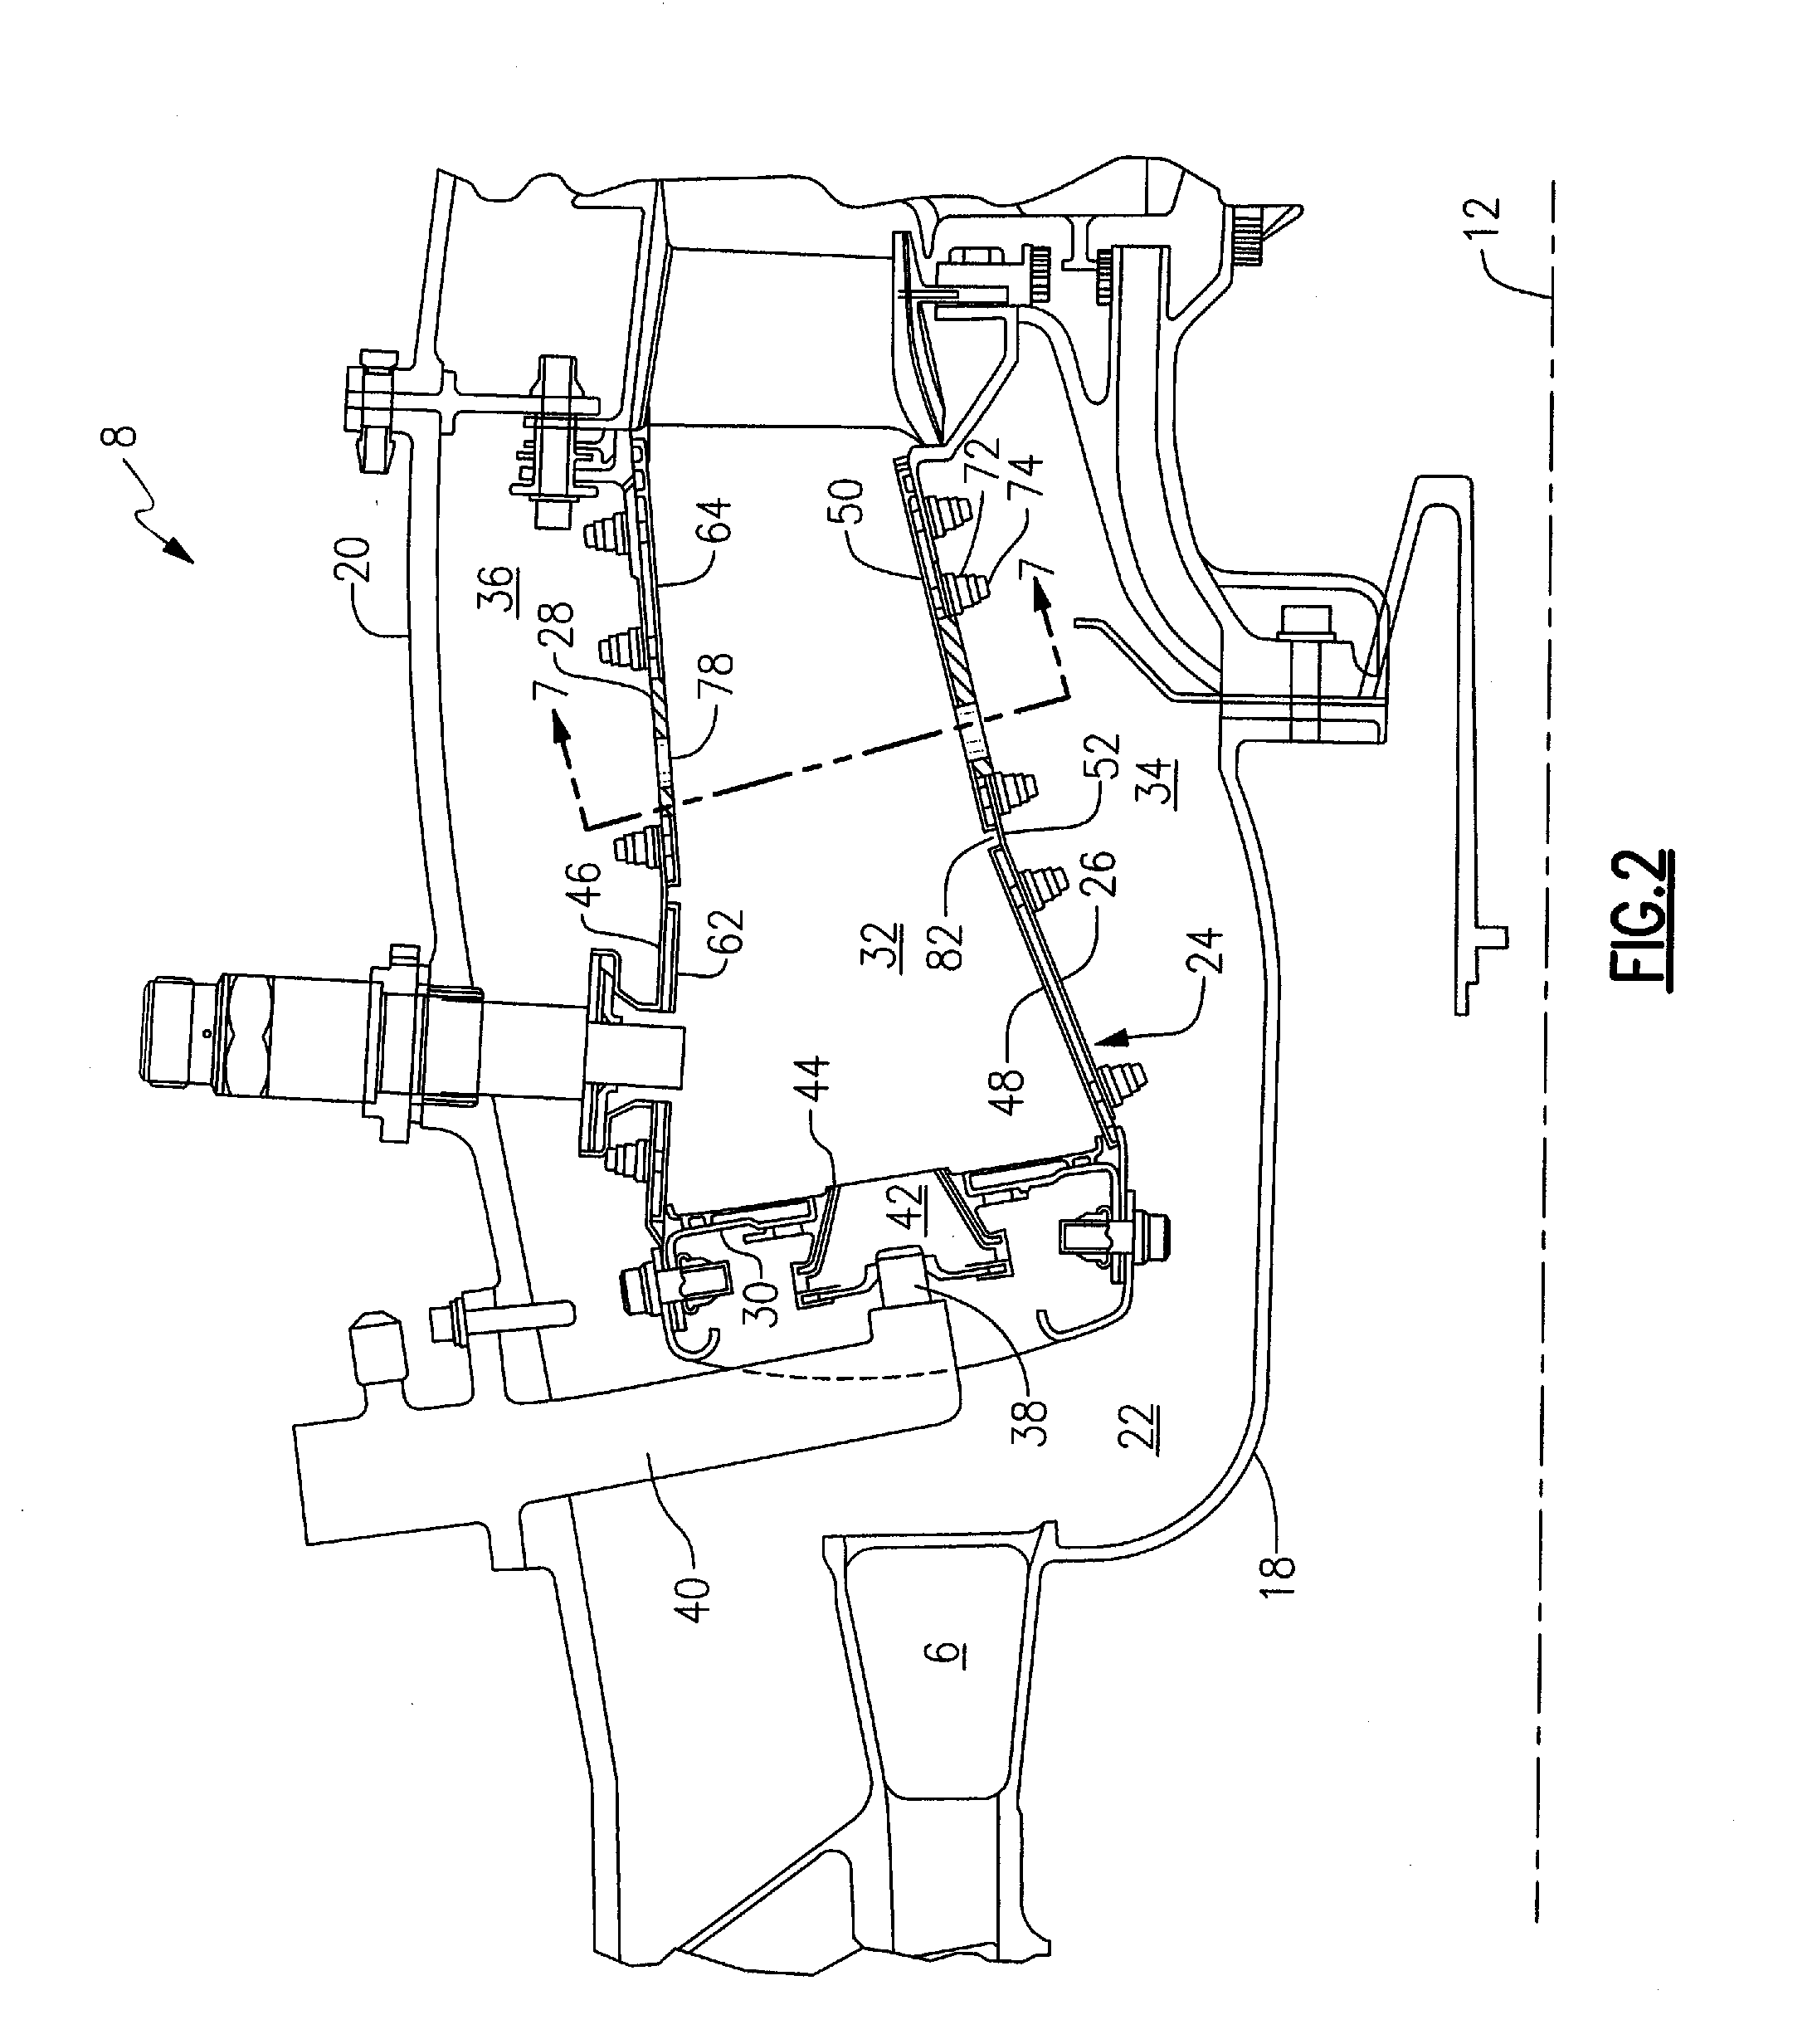 Combustor panel arrangement